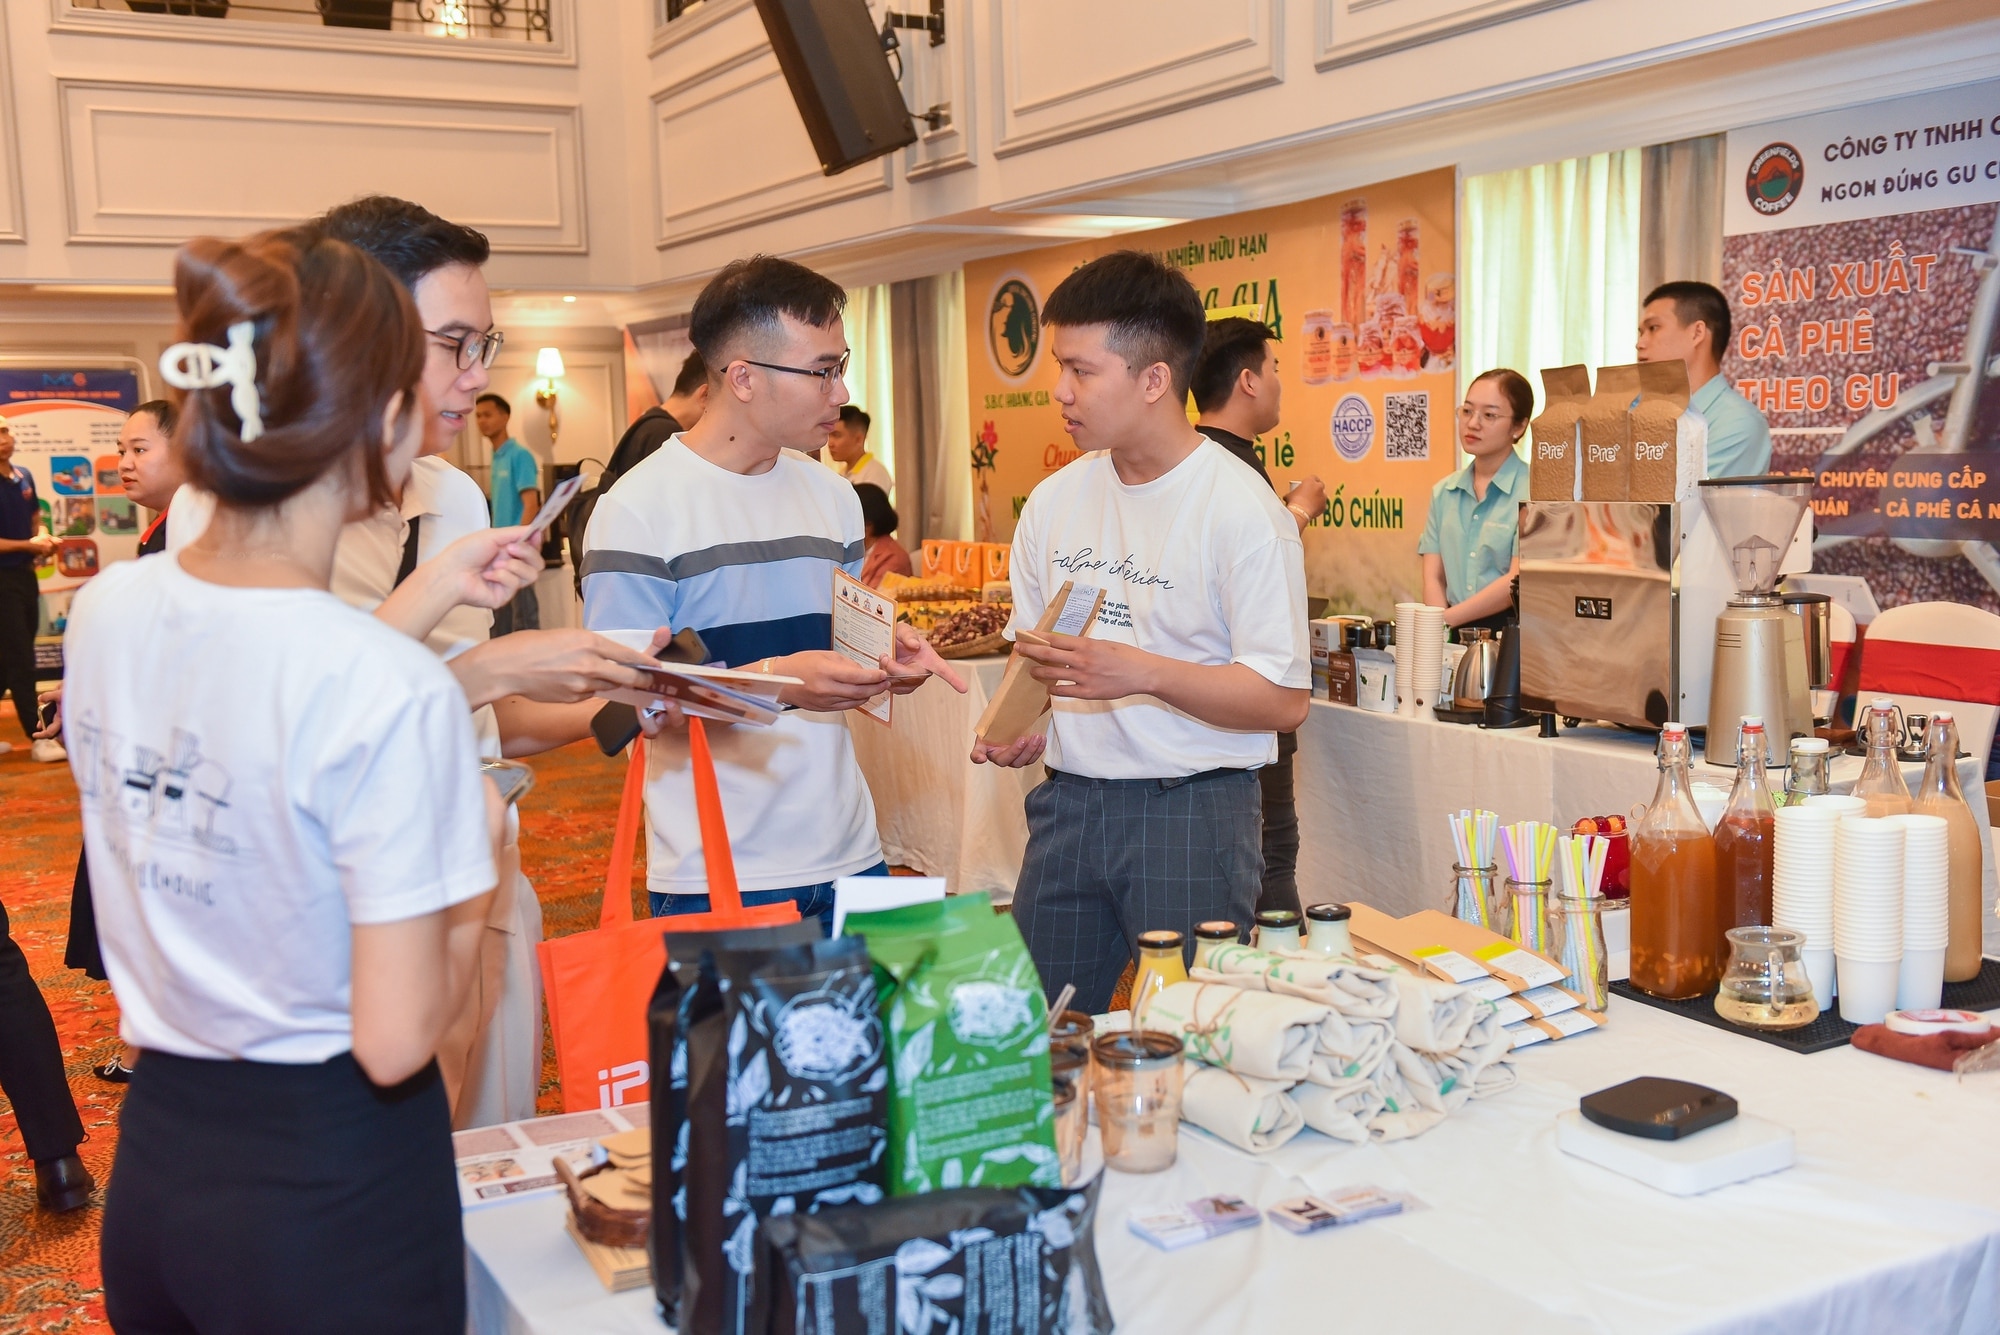 iPOS.vn sắp tổ chức hội nghị nói về ngành ẩm thực và đồ uống tại Hà Nội - Ảnh 1.